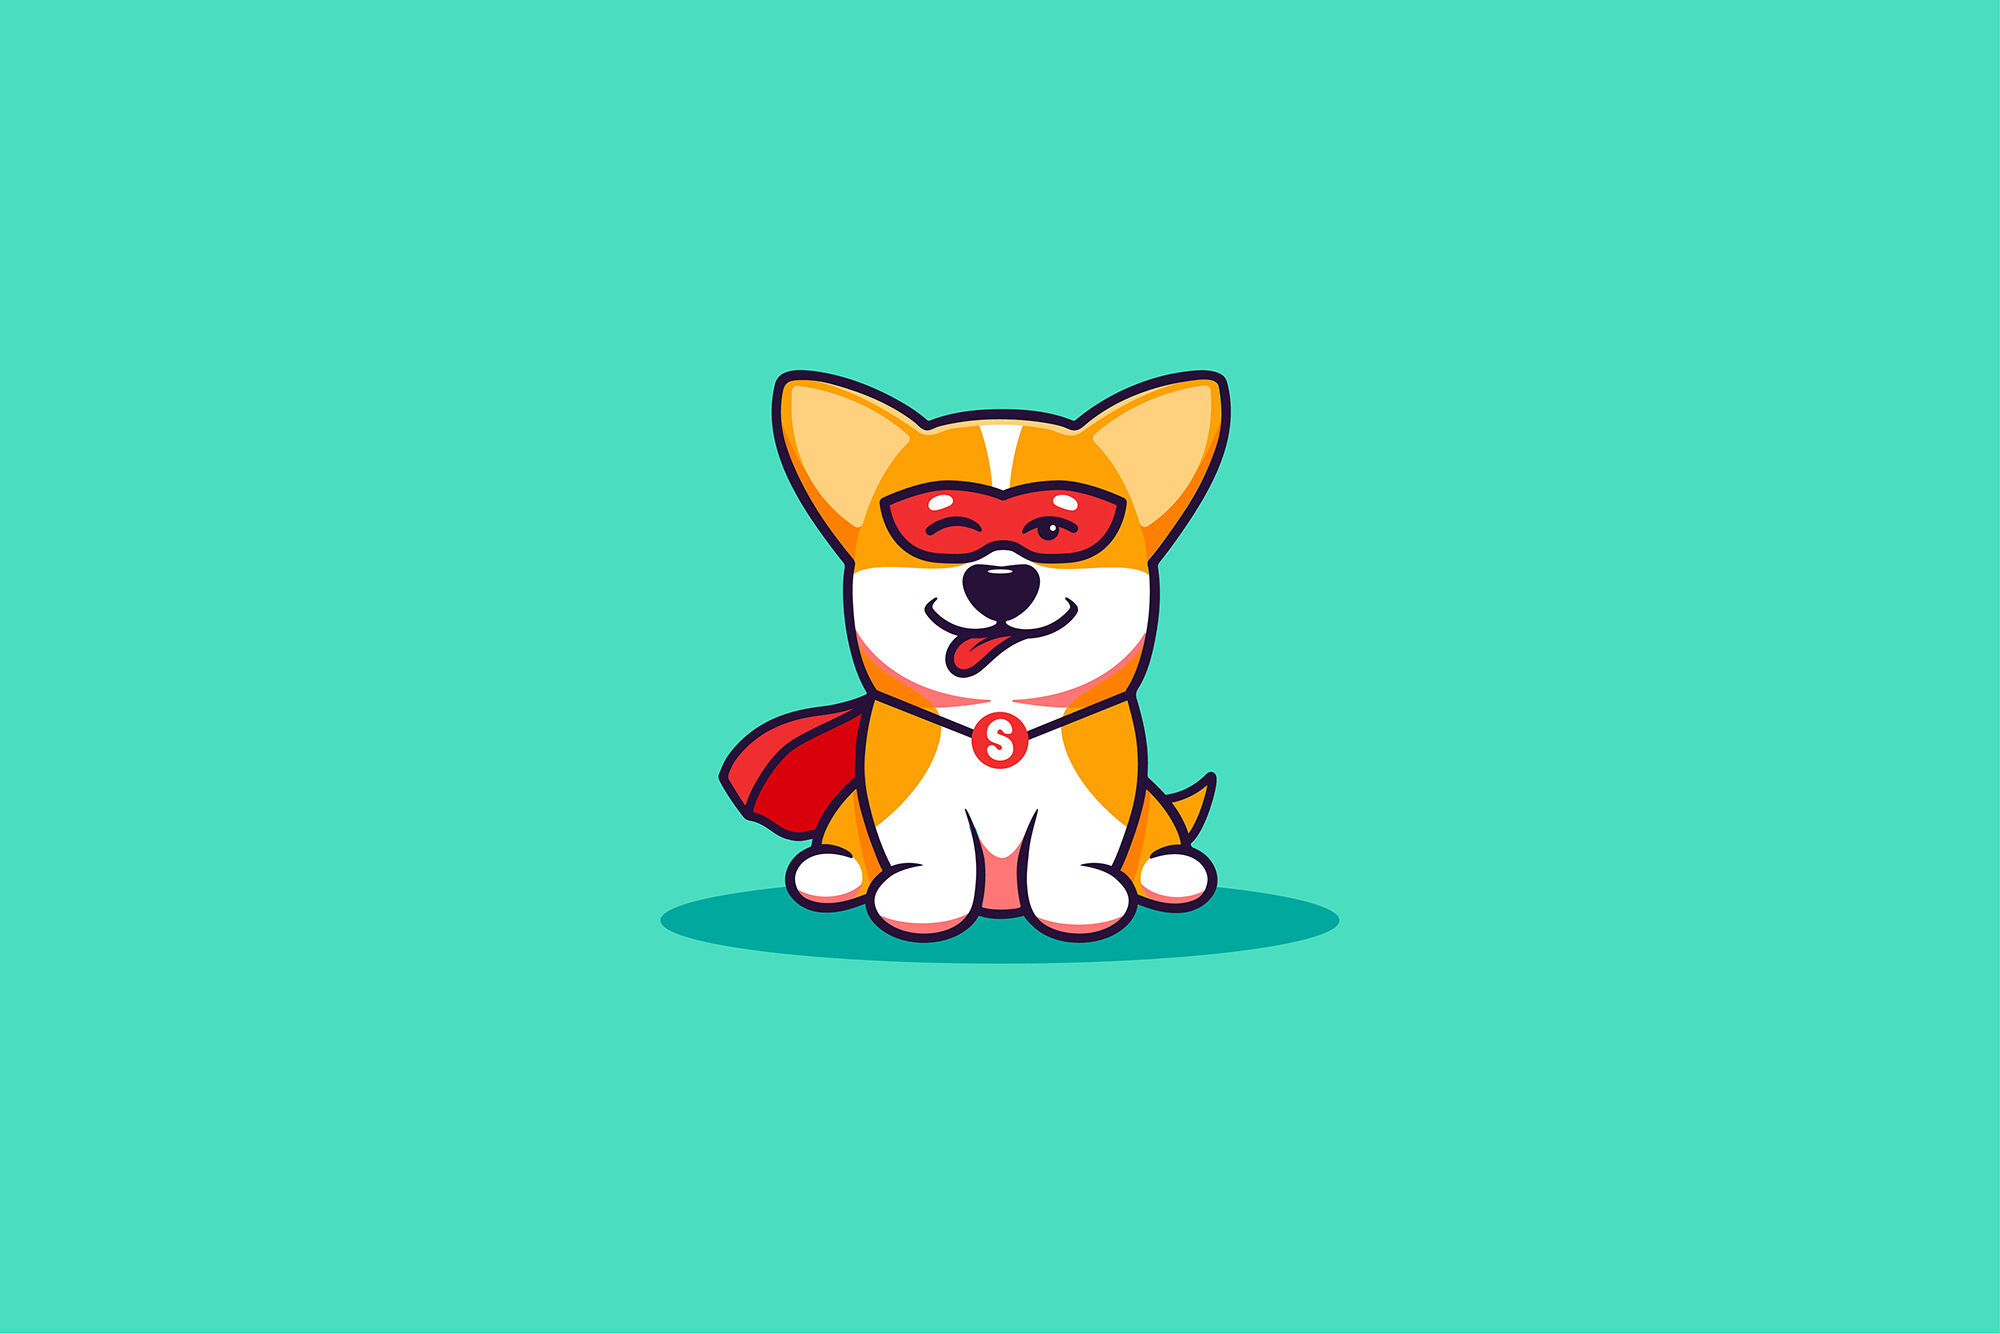 Logo siêu chó: Logo siêu chó là biểu tượng thân thiện và đáng yêu, là điểm nhấn trong thiết kế của một thương hiệu đầy sức sống. Hãy xem hình ảnh để hiểu rõ hơn về sức mạnh và tinh thần của siêu chó trên logo.